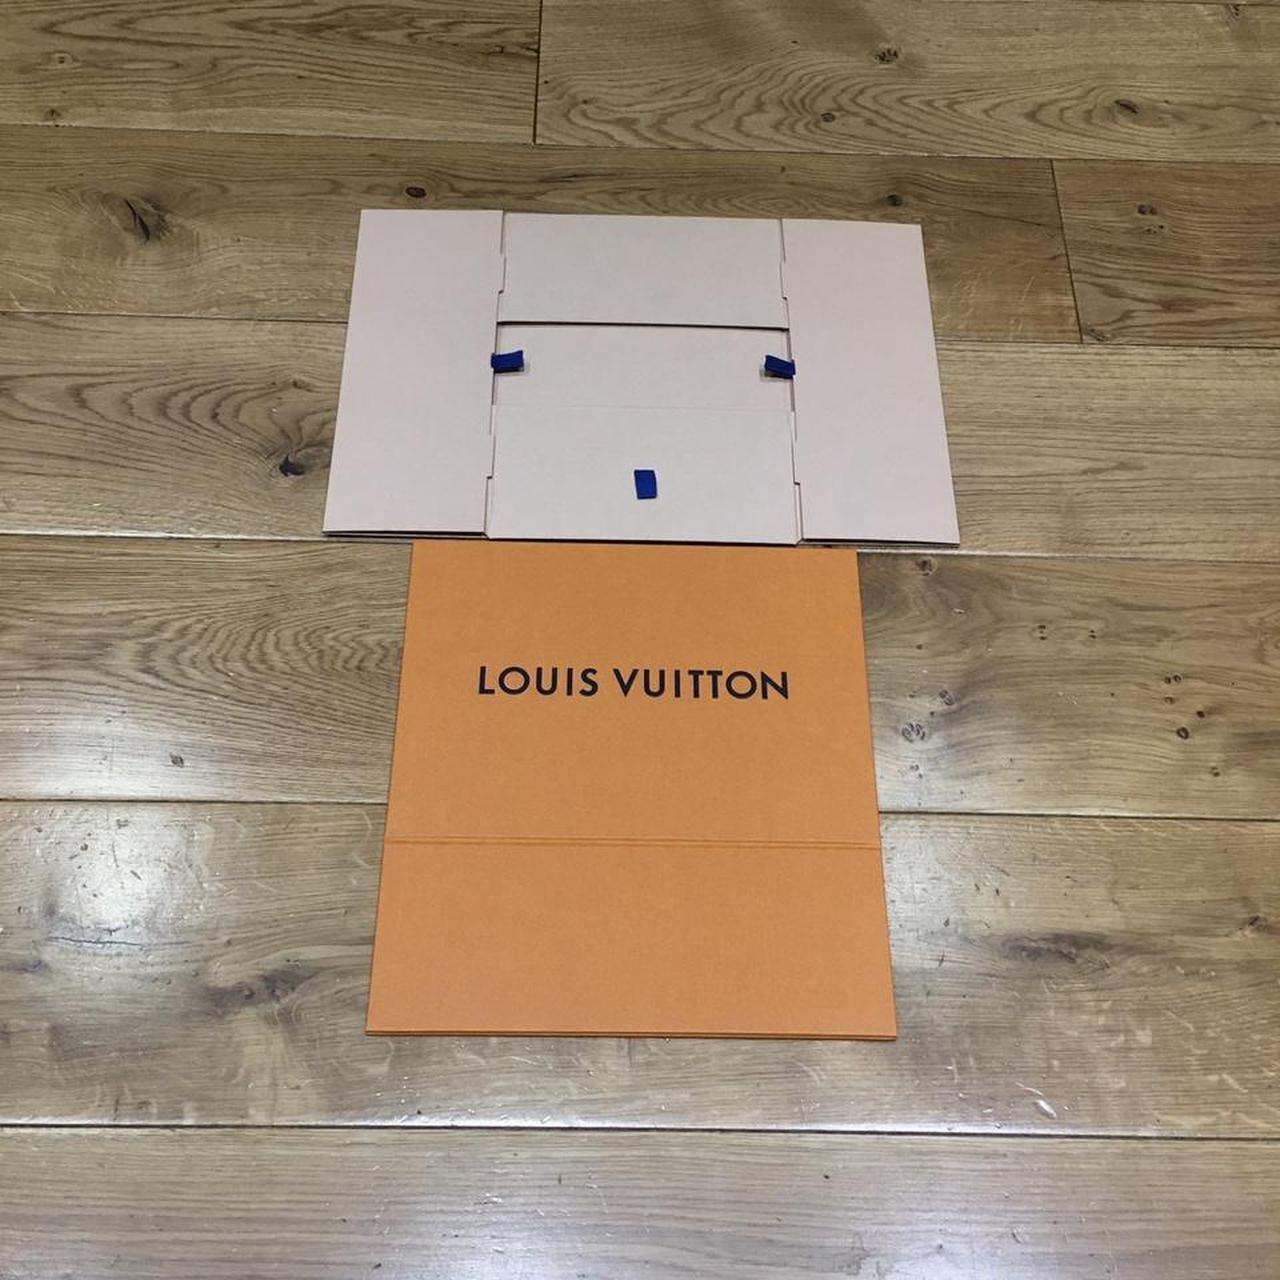 Louis Vuitton Box Empty Slide Out